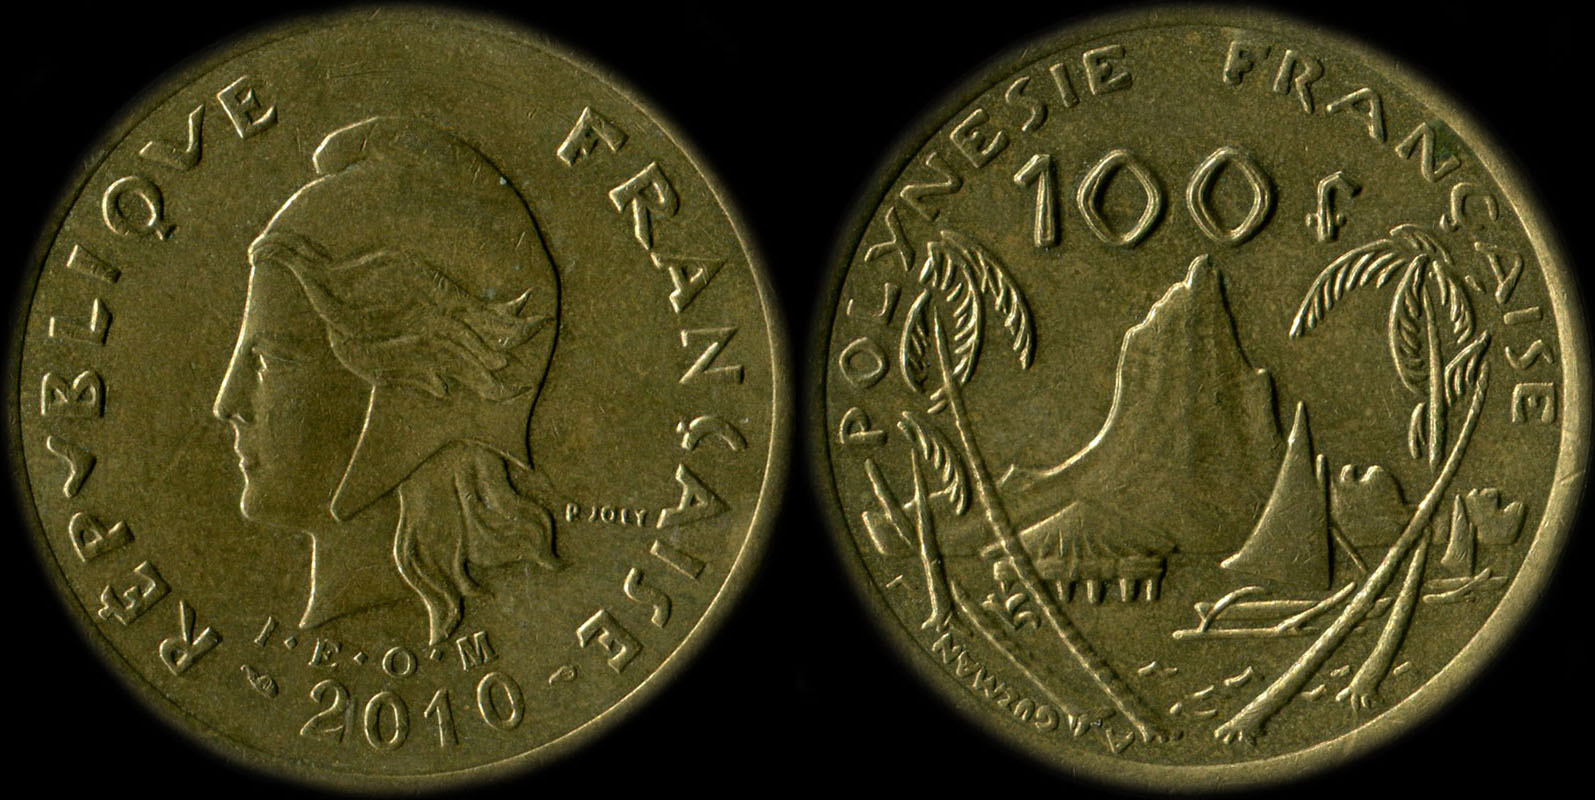 Pice de 100 francs 2010 - I.E.O.M. Polynsie franaise